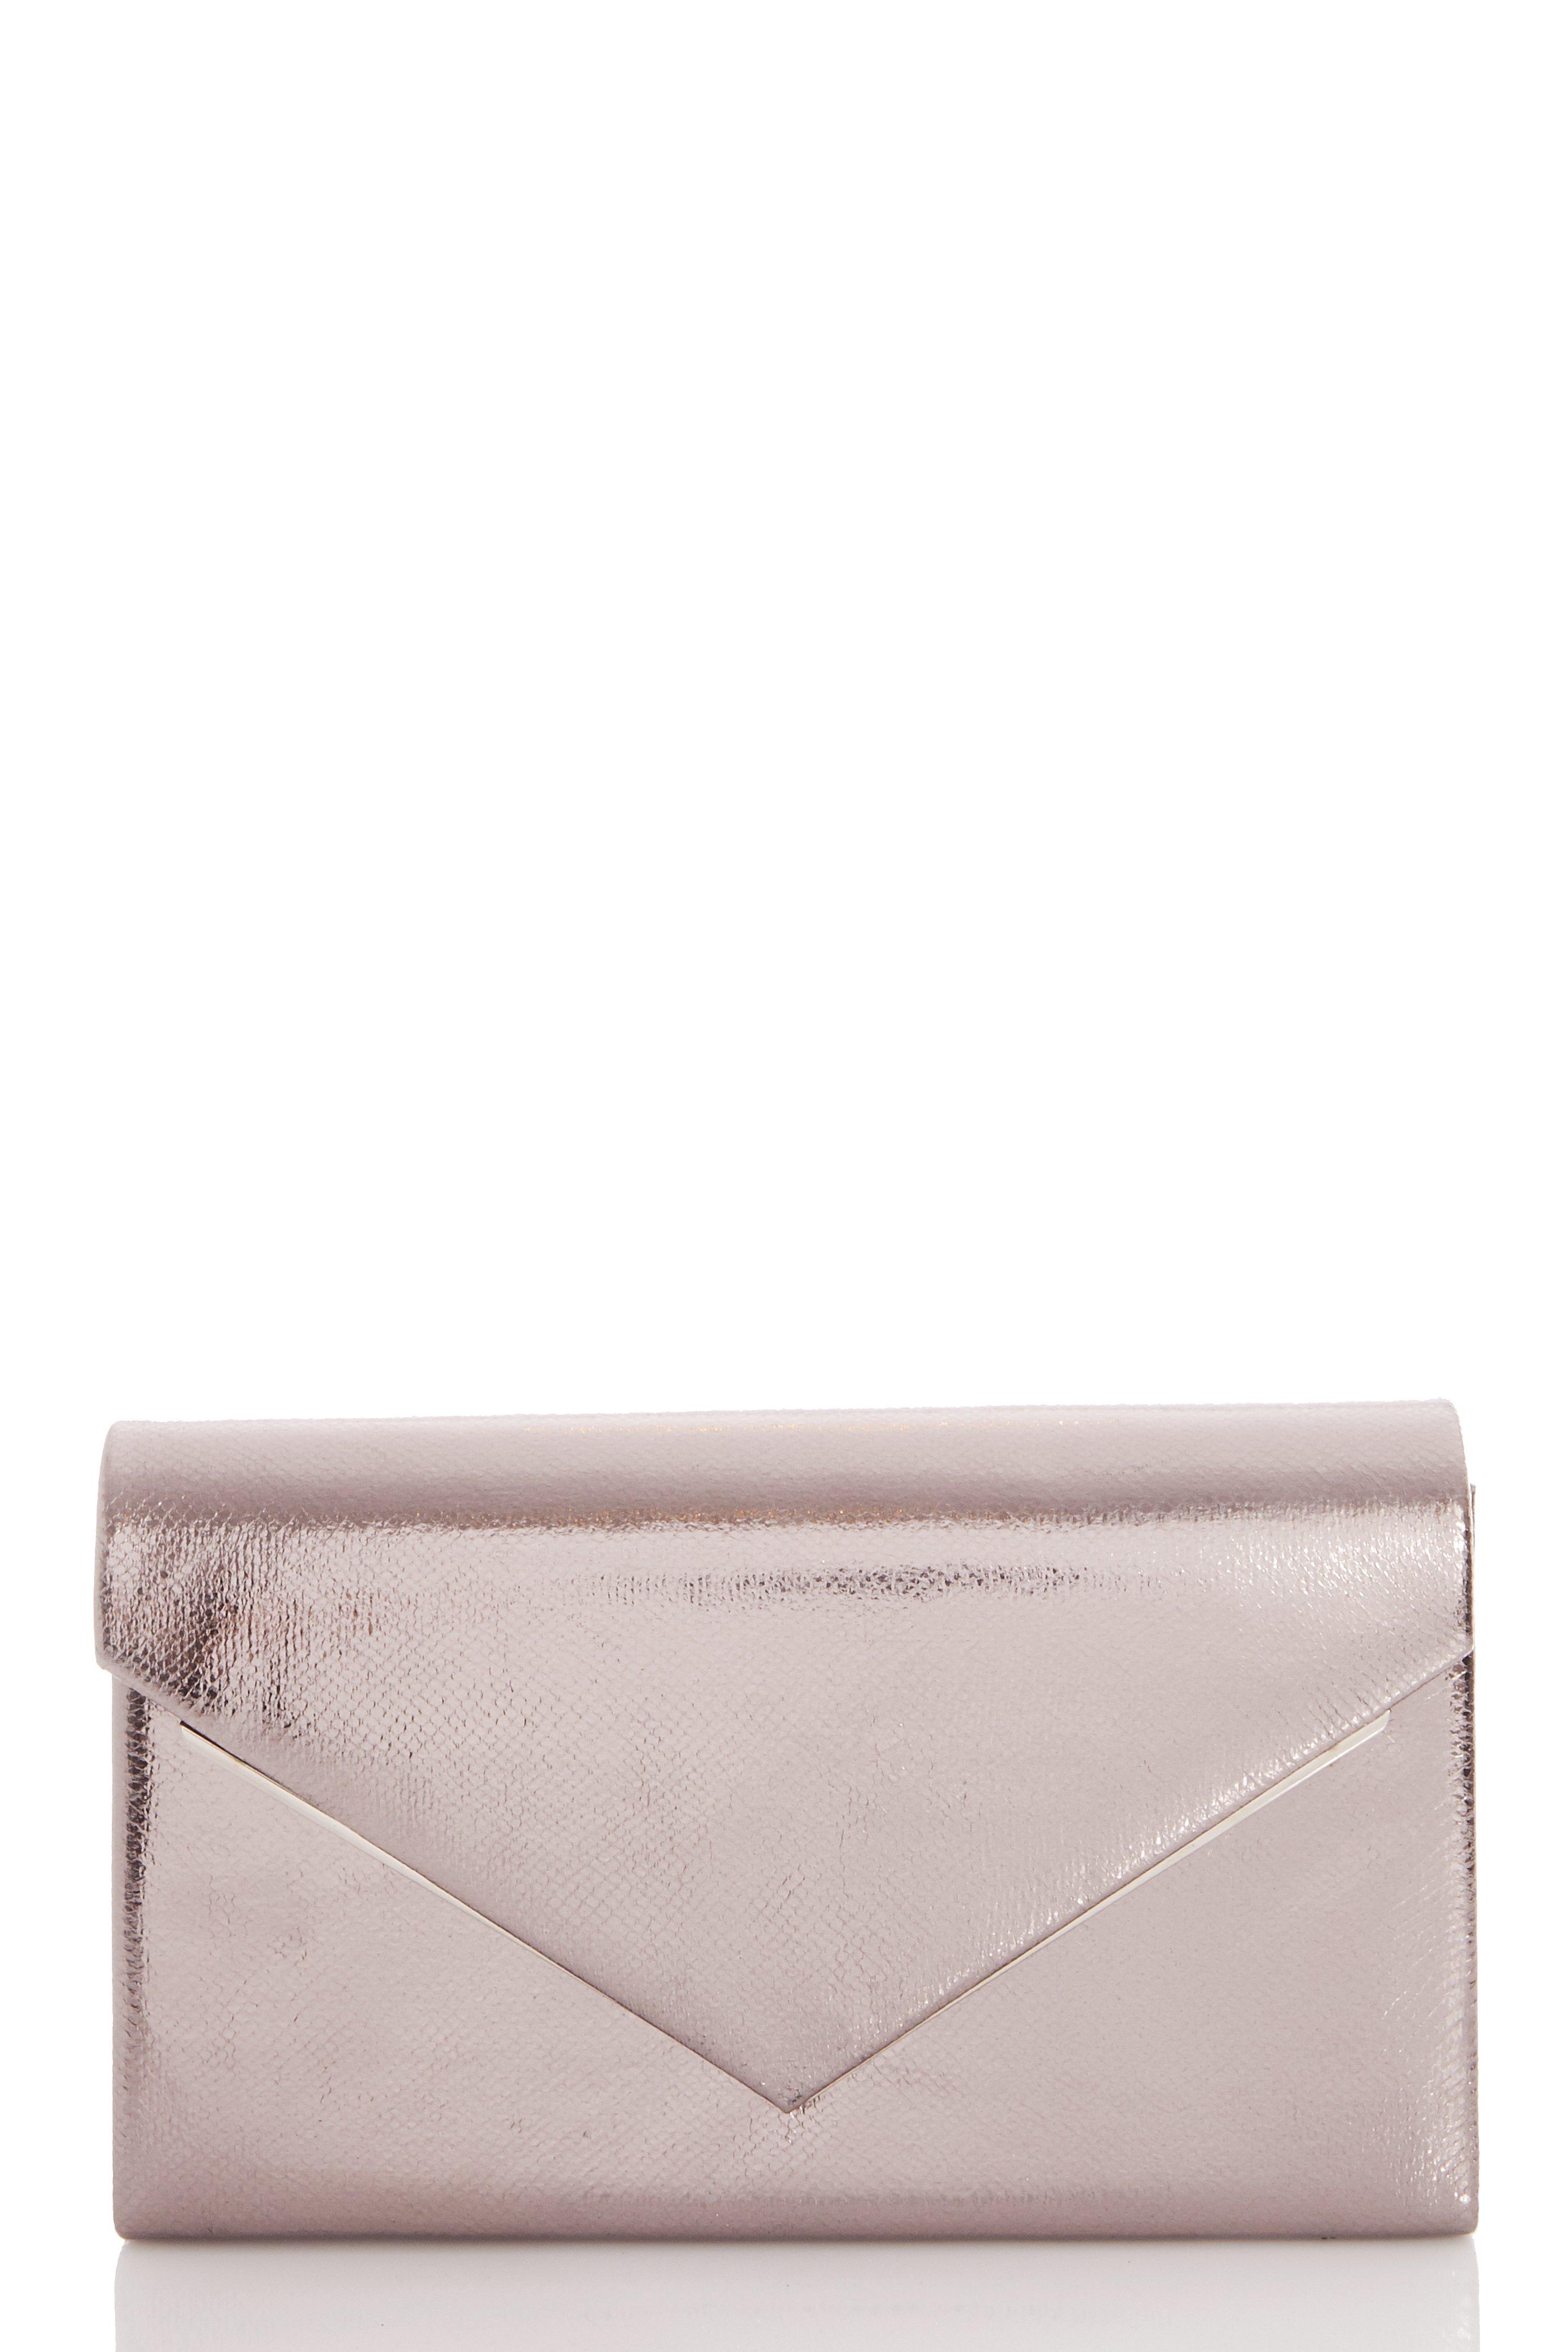 Silver Metallic Envelope Bag - Quiz Clothing